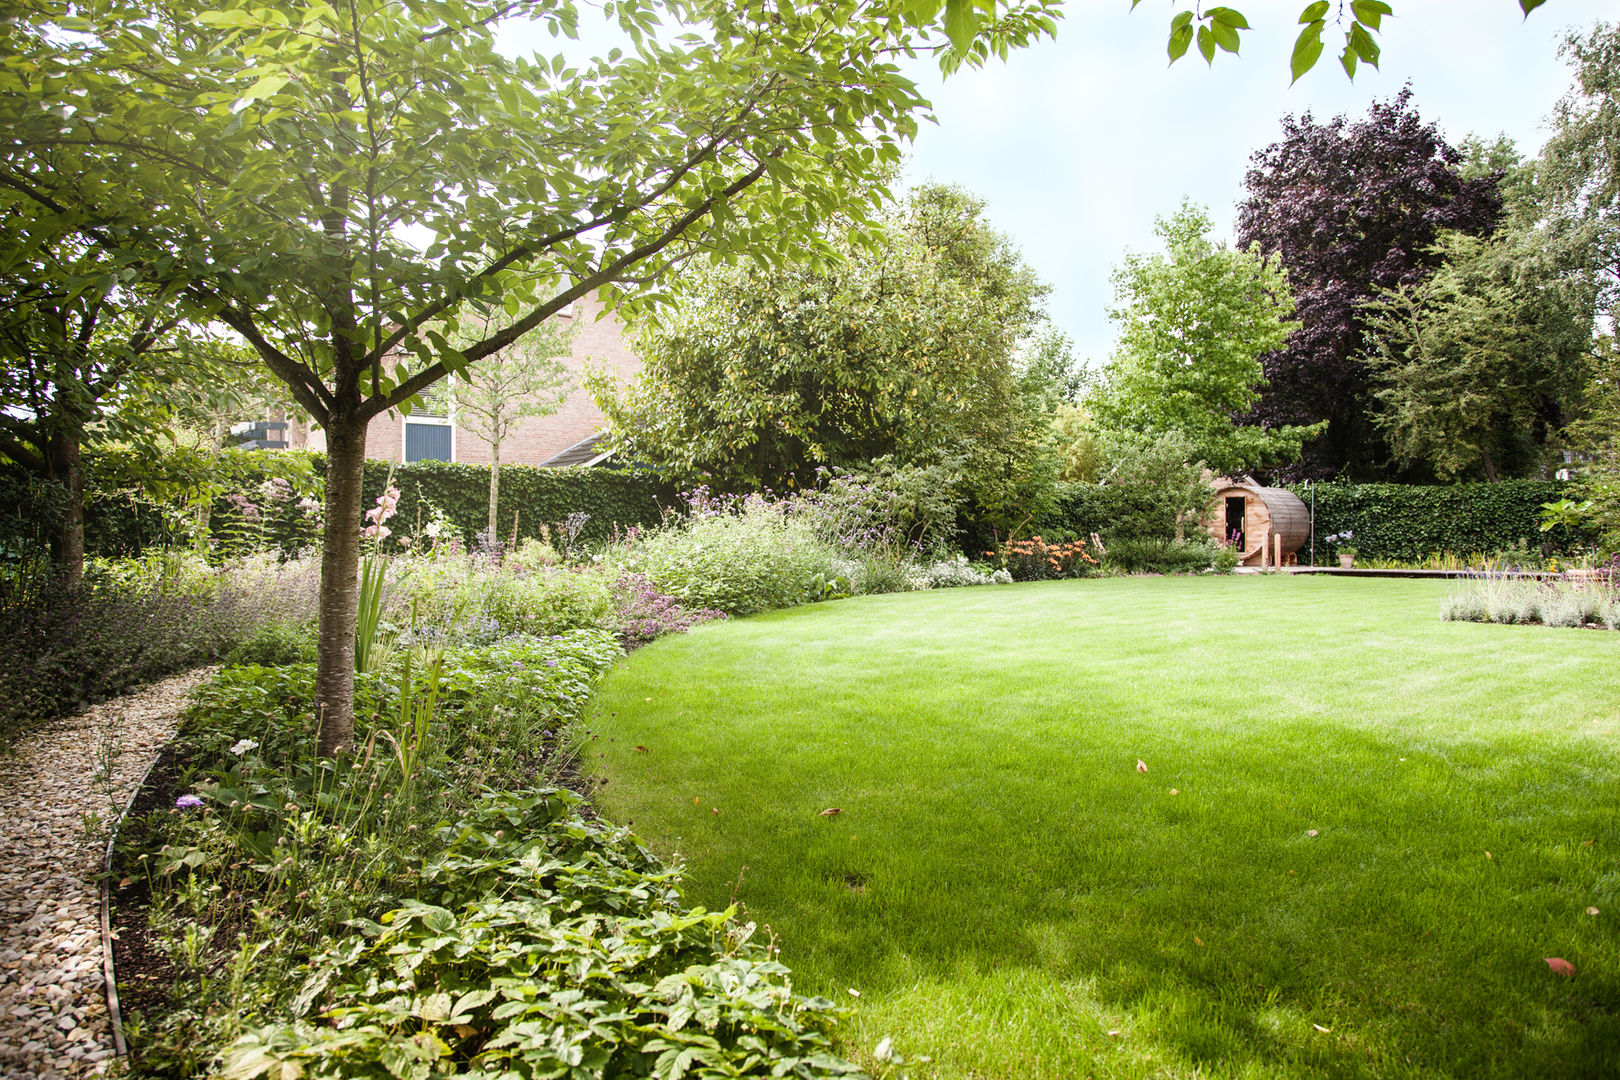 Wellness tuin verbonden met het landschap, Studio REDD exclusieve tuinen Studio REDD exclusieve tuinen Jardins campestres